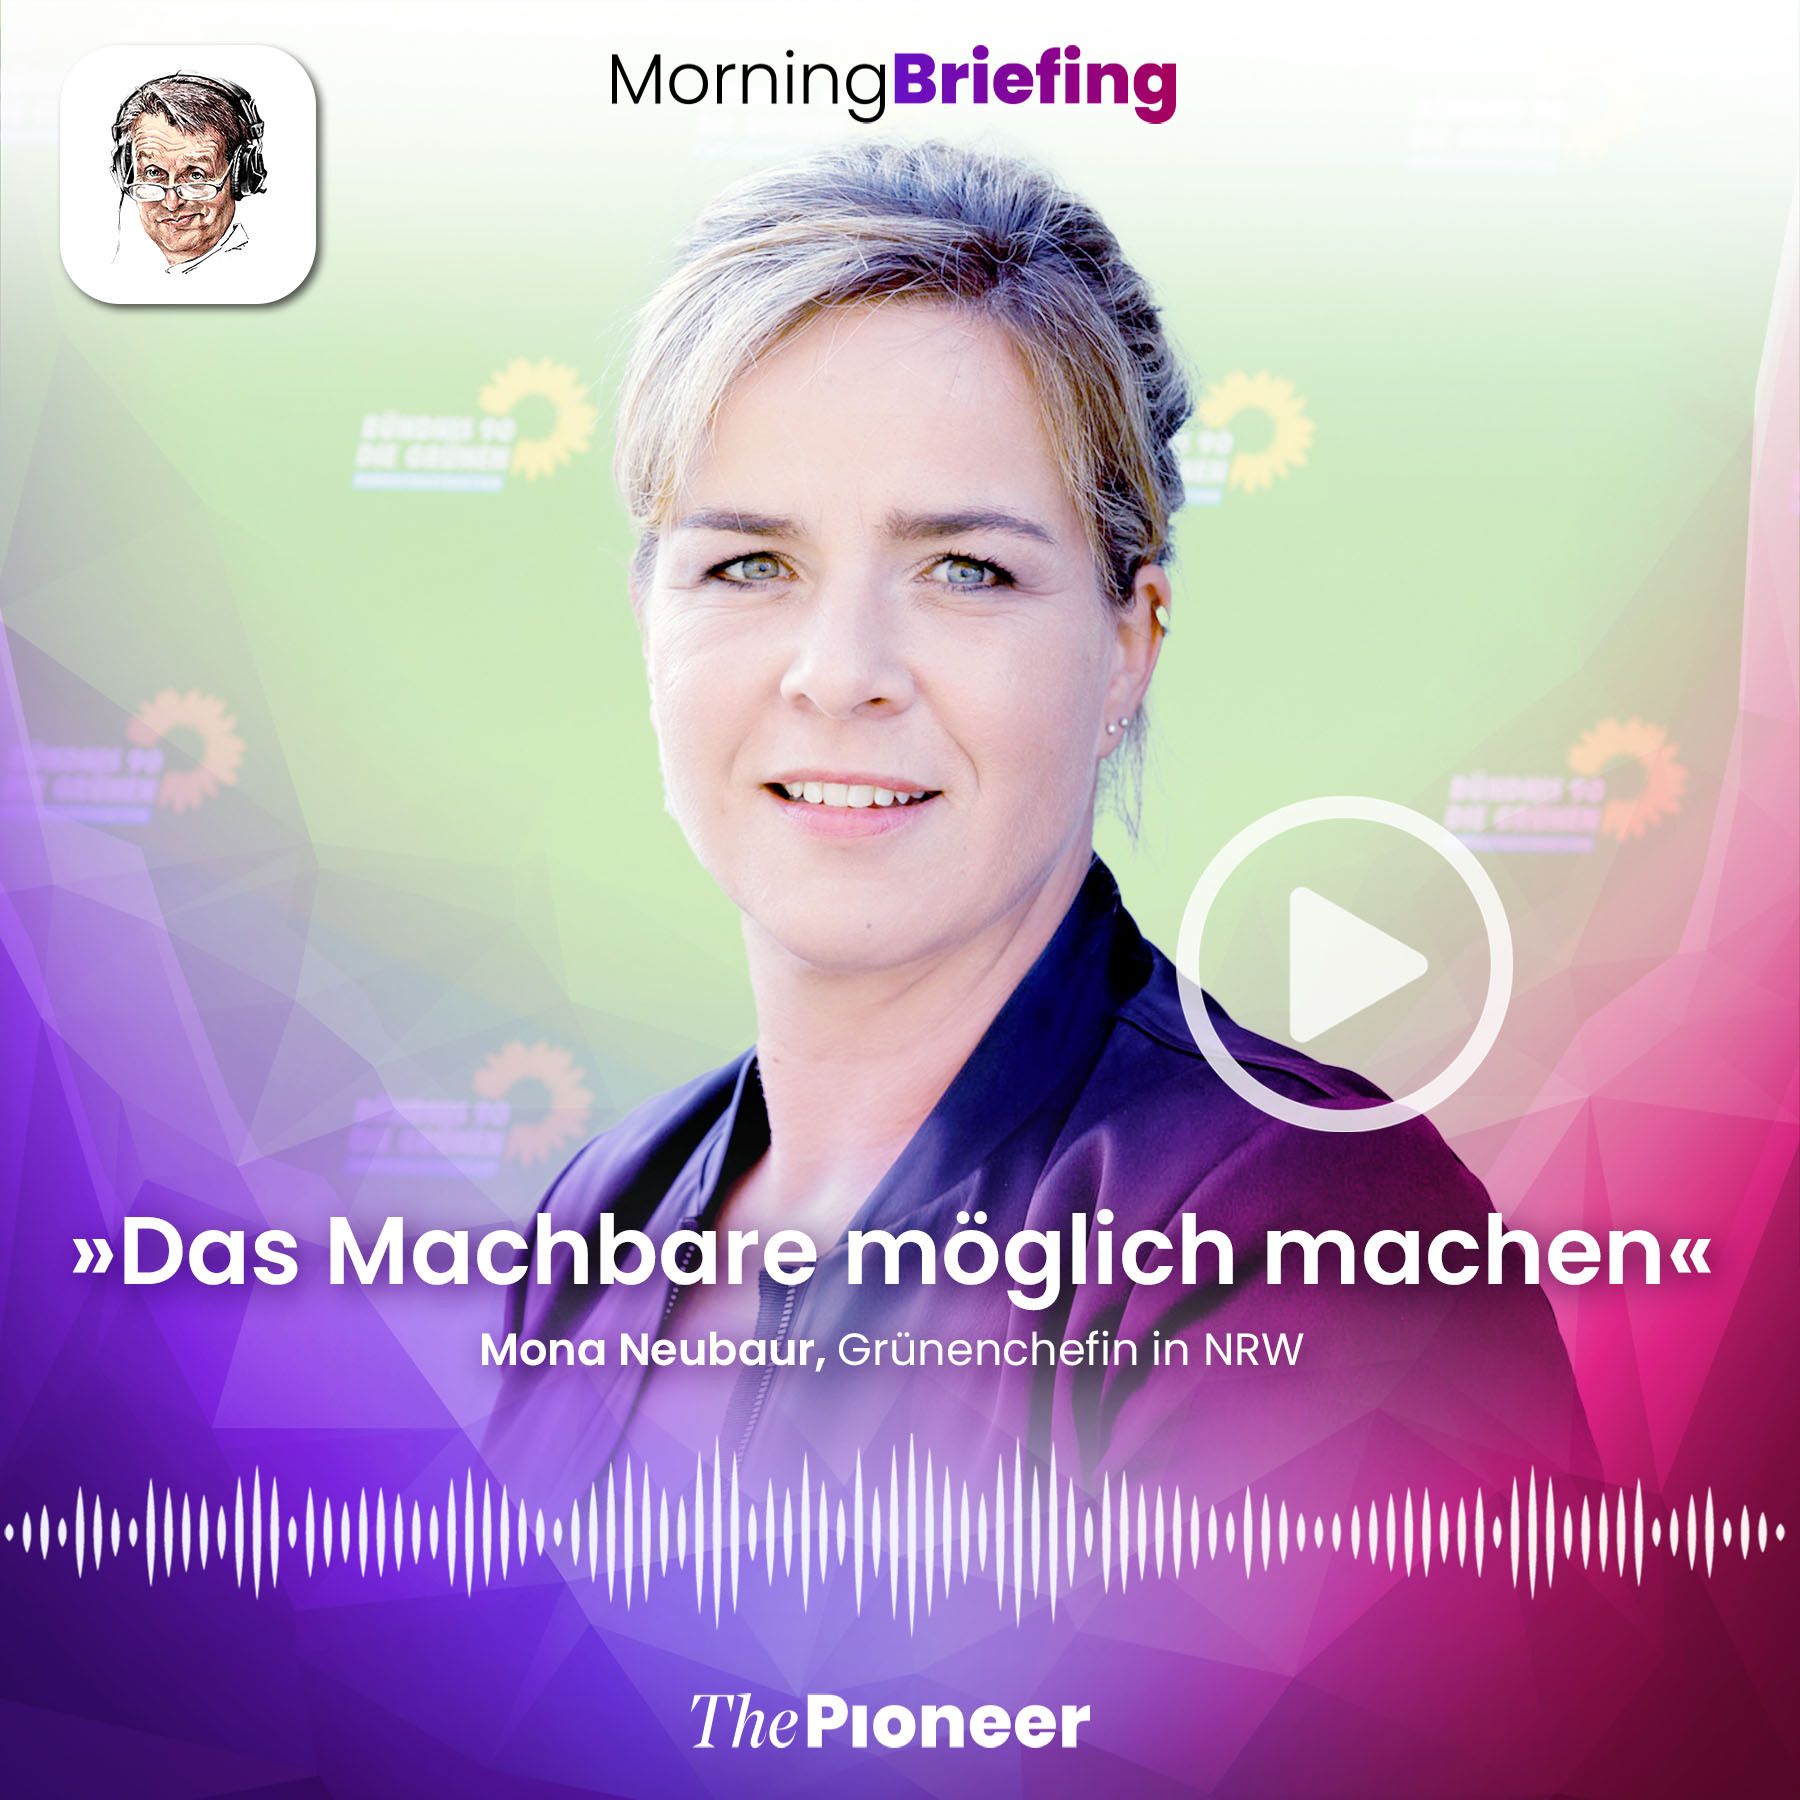 20210714-podcast-morning-briefing-media-pioneer-neubaur